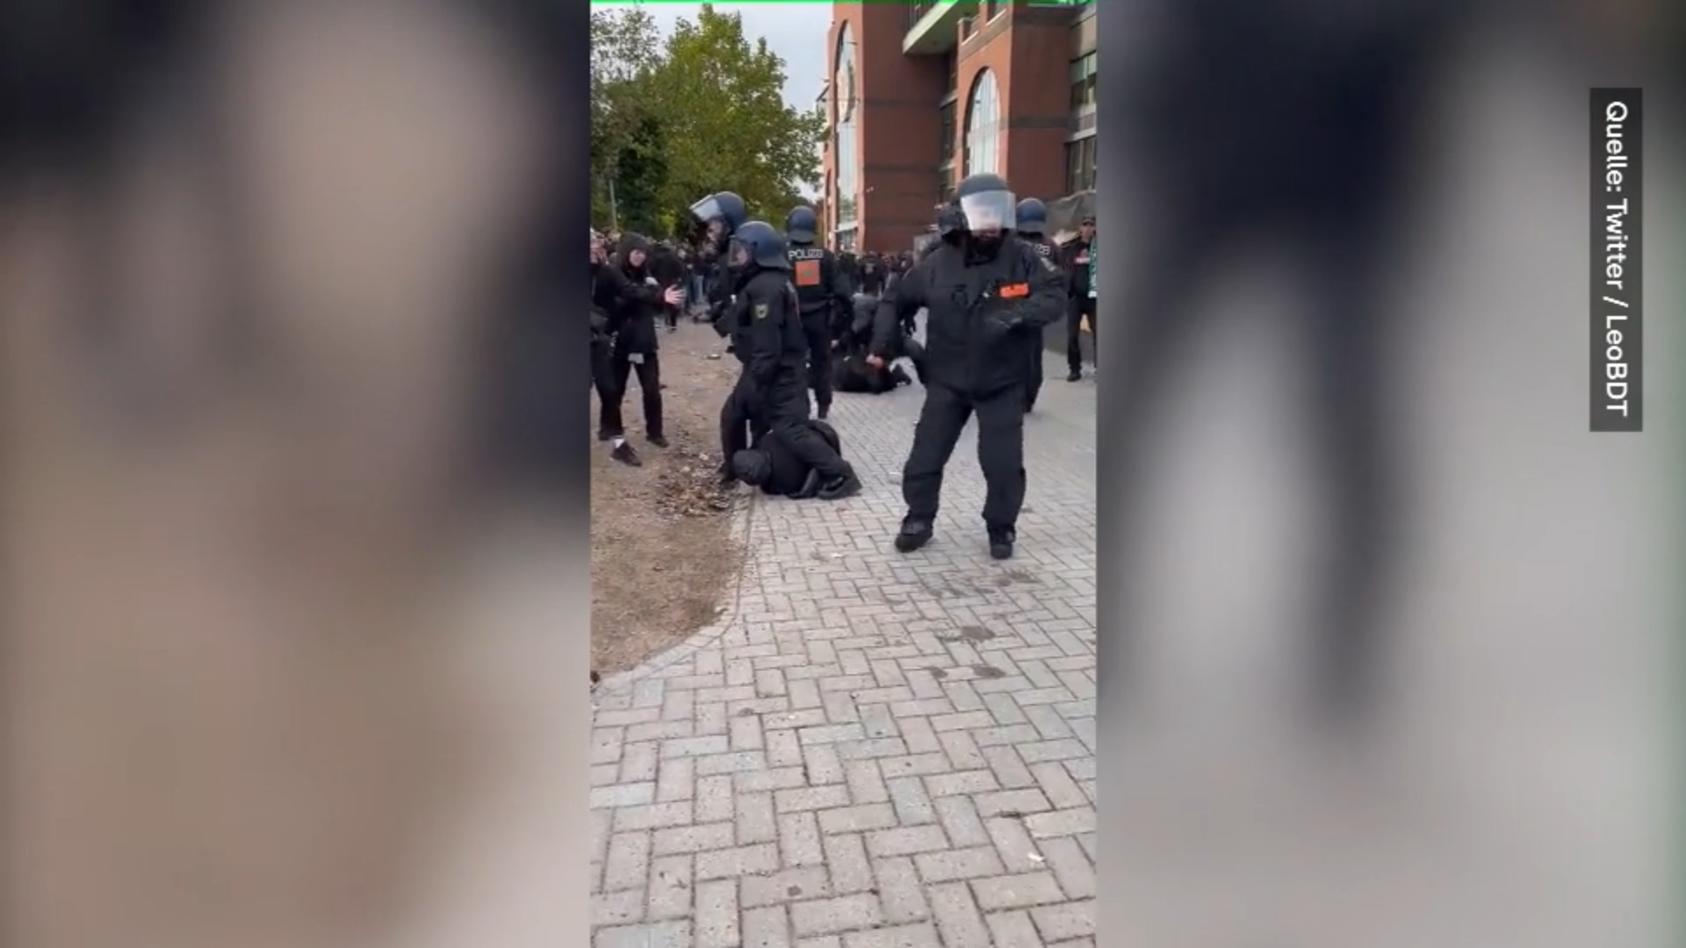 Polizei prügelt auf Fußballfan ein: "Seid ihr bescheuert?" Heftige Szenen in Hamburg